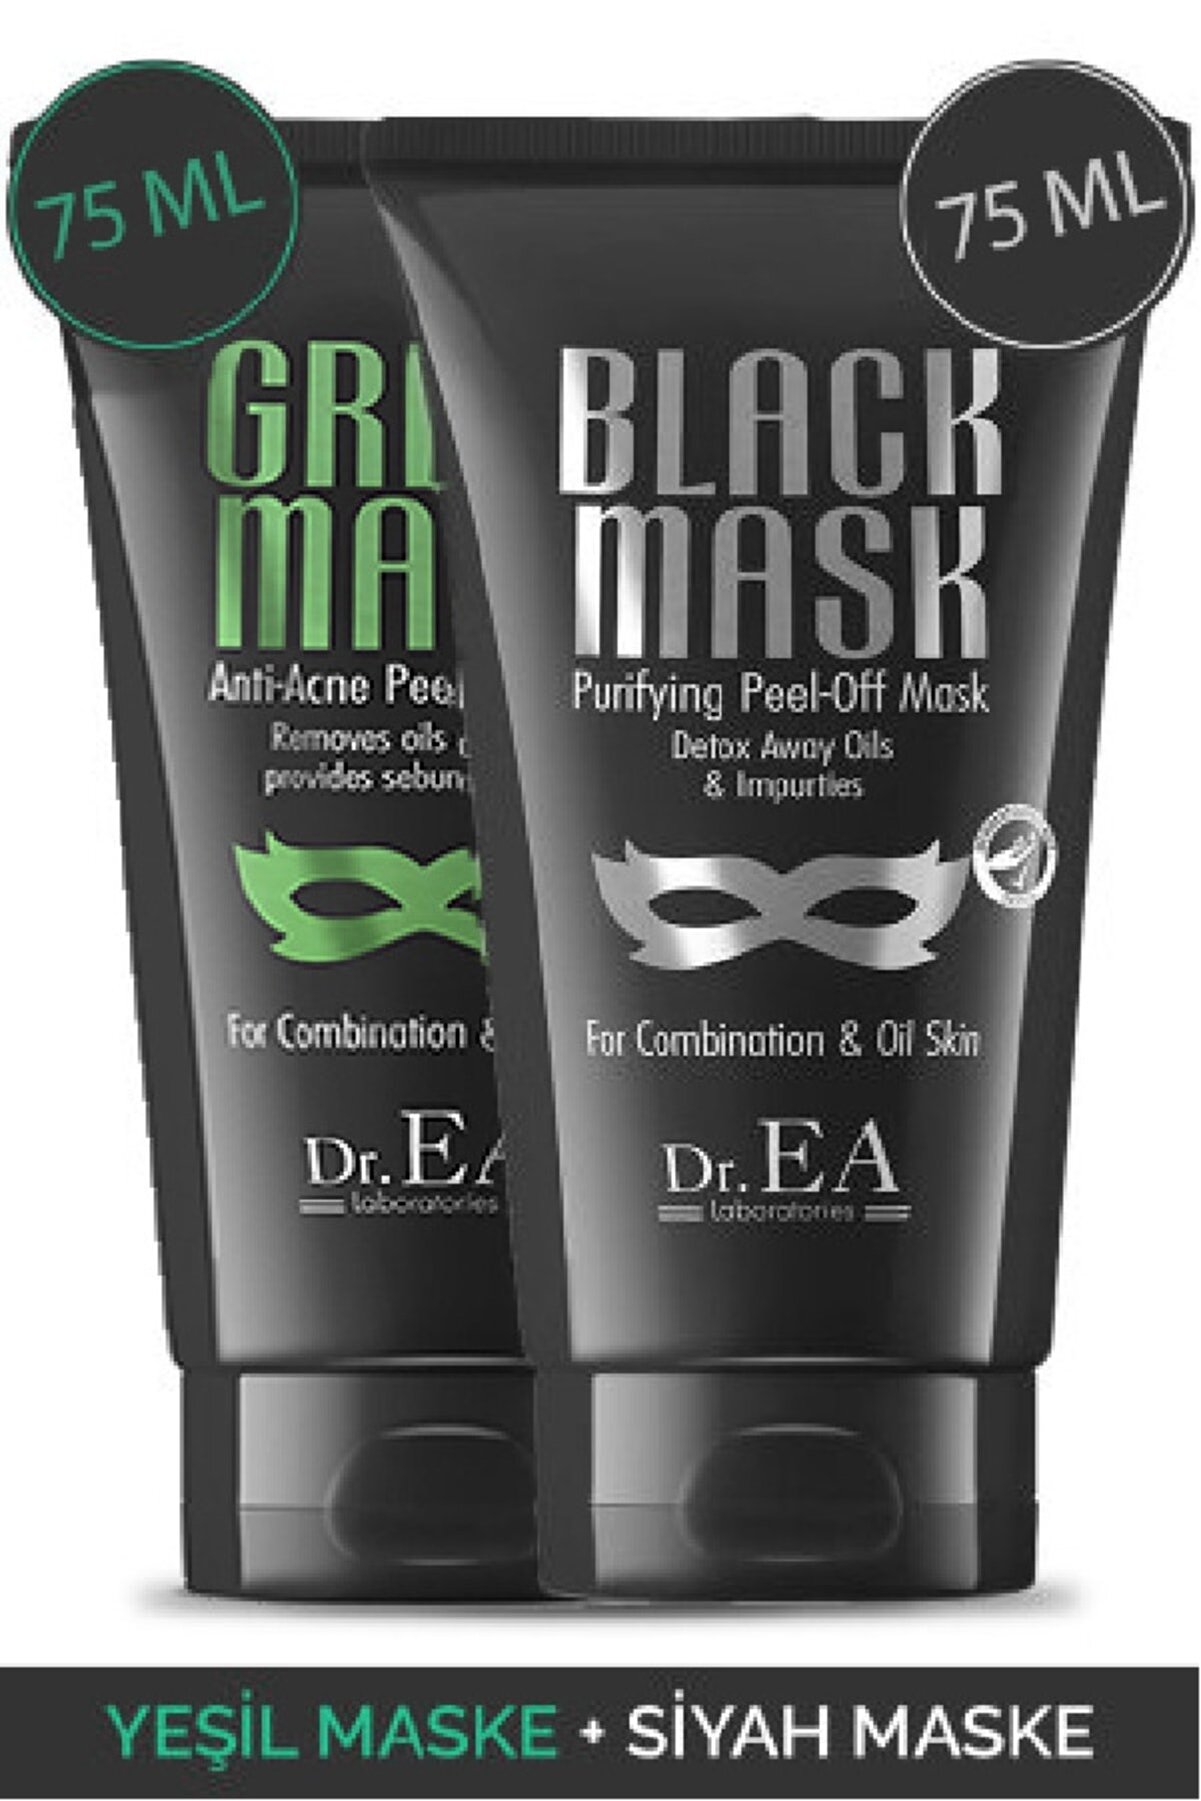 Dr. EA Laboratories Dr. Ea Soyulabilir Siyah Maske Ve Soyulabilir Yeşil Maske 2'li Özel Set (75 ML)